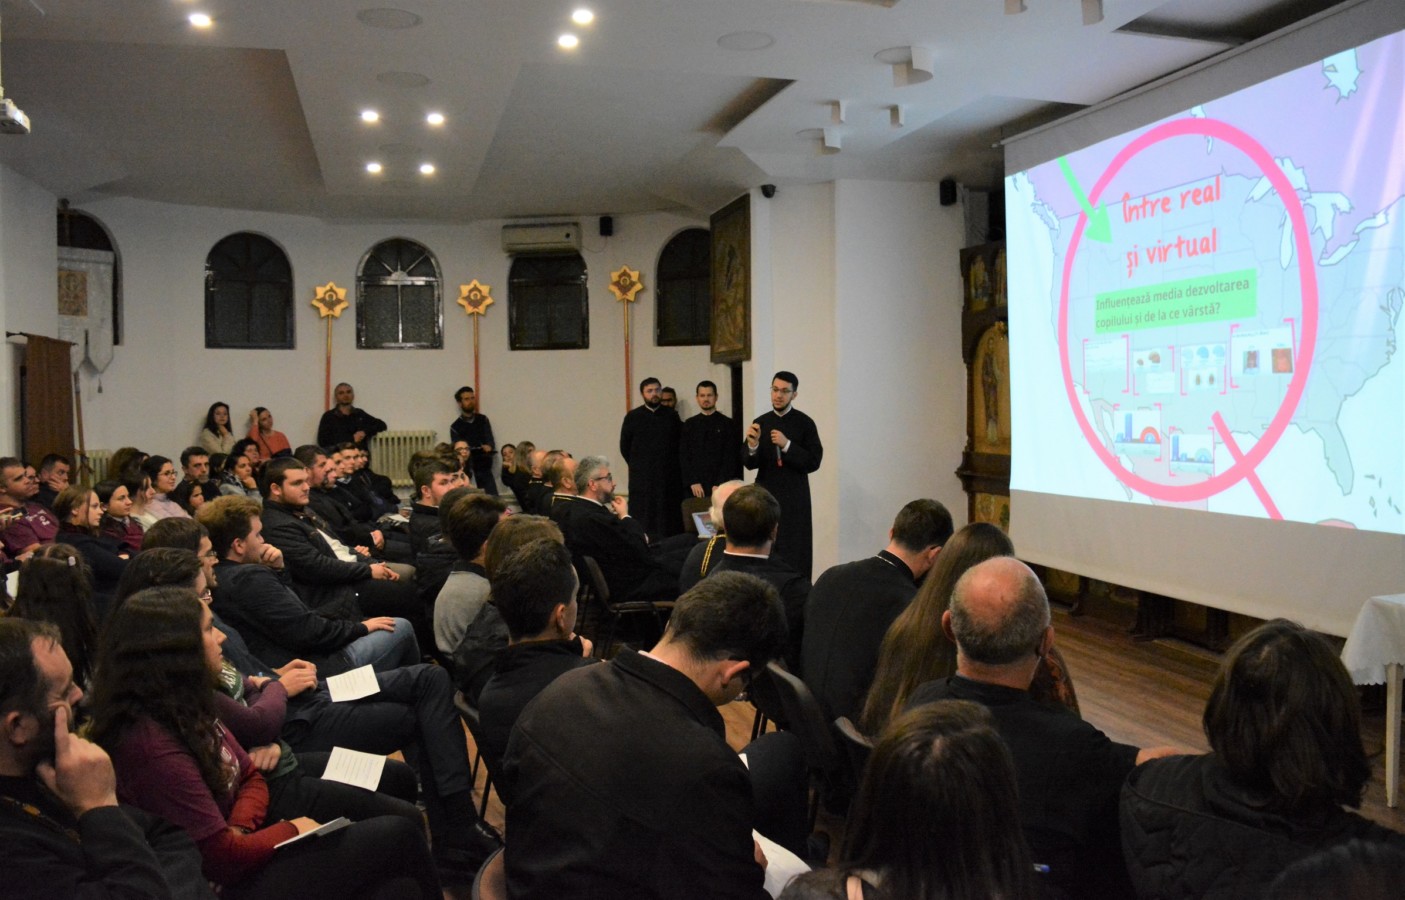 „Tinerețea – între real și virtual”, tema întâlnirii tinerilor ortodocși din Cluj-Napoca